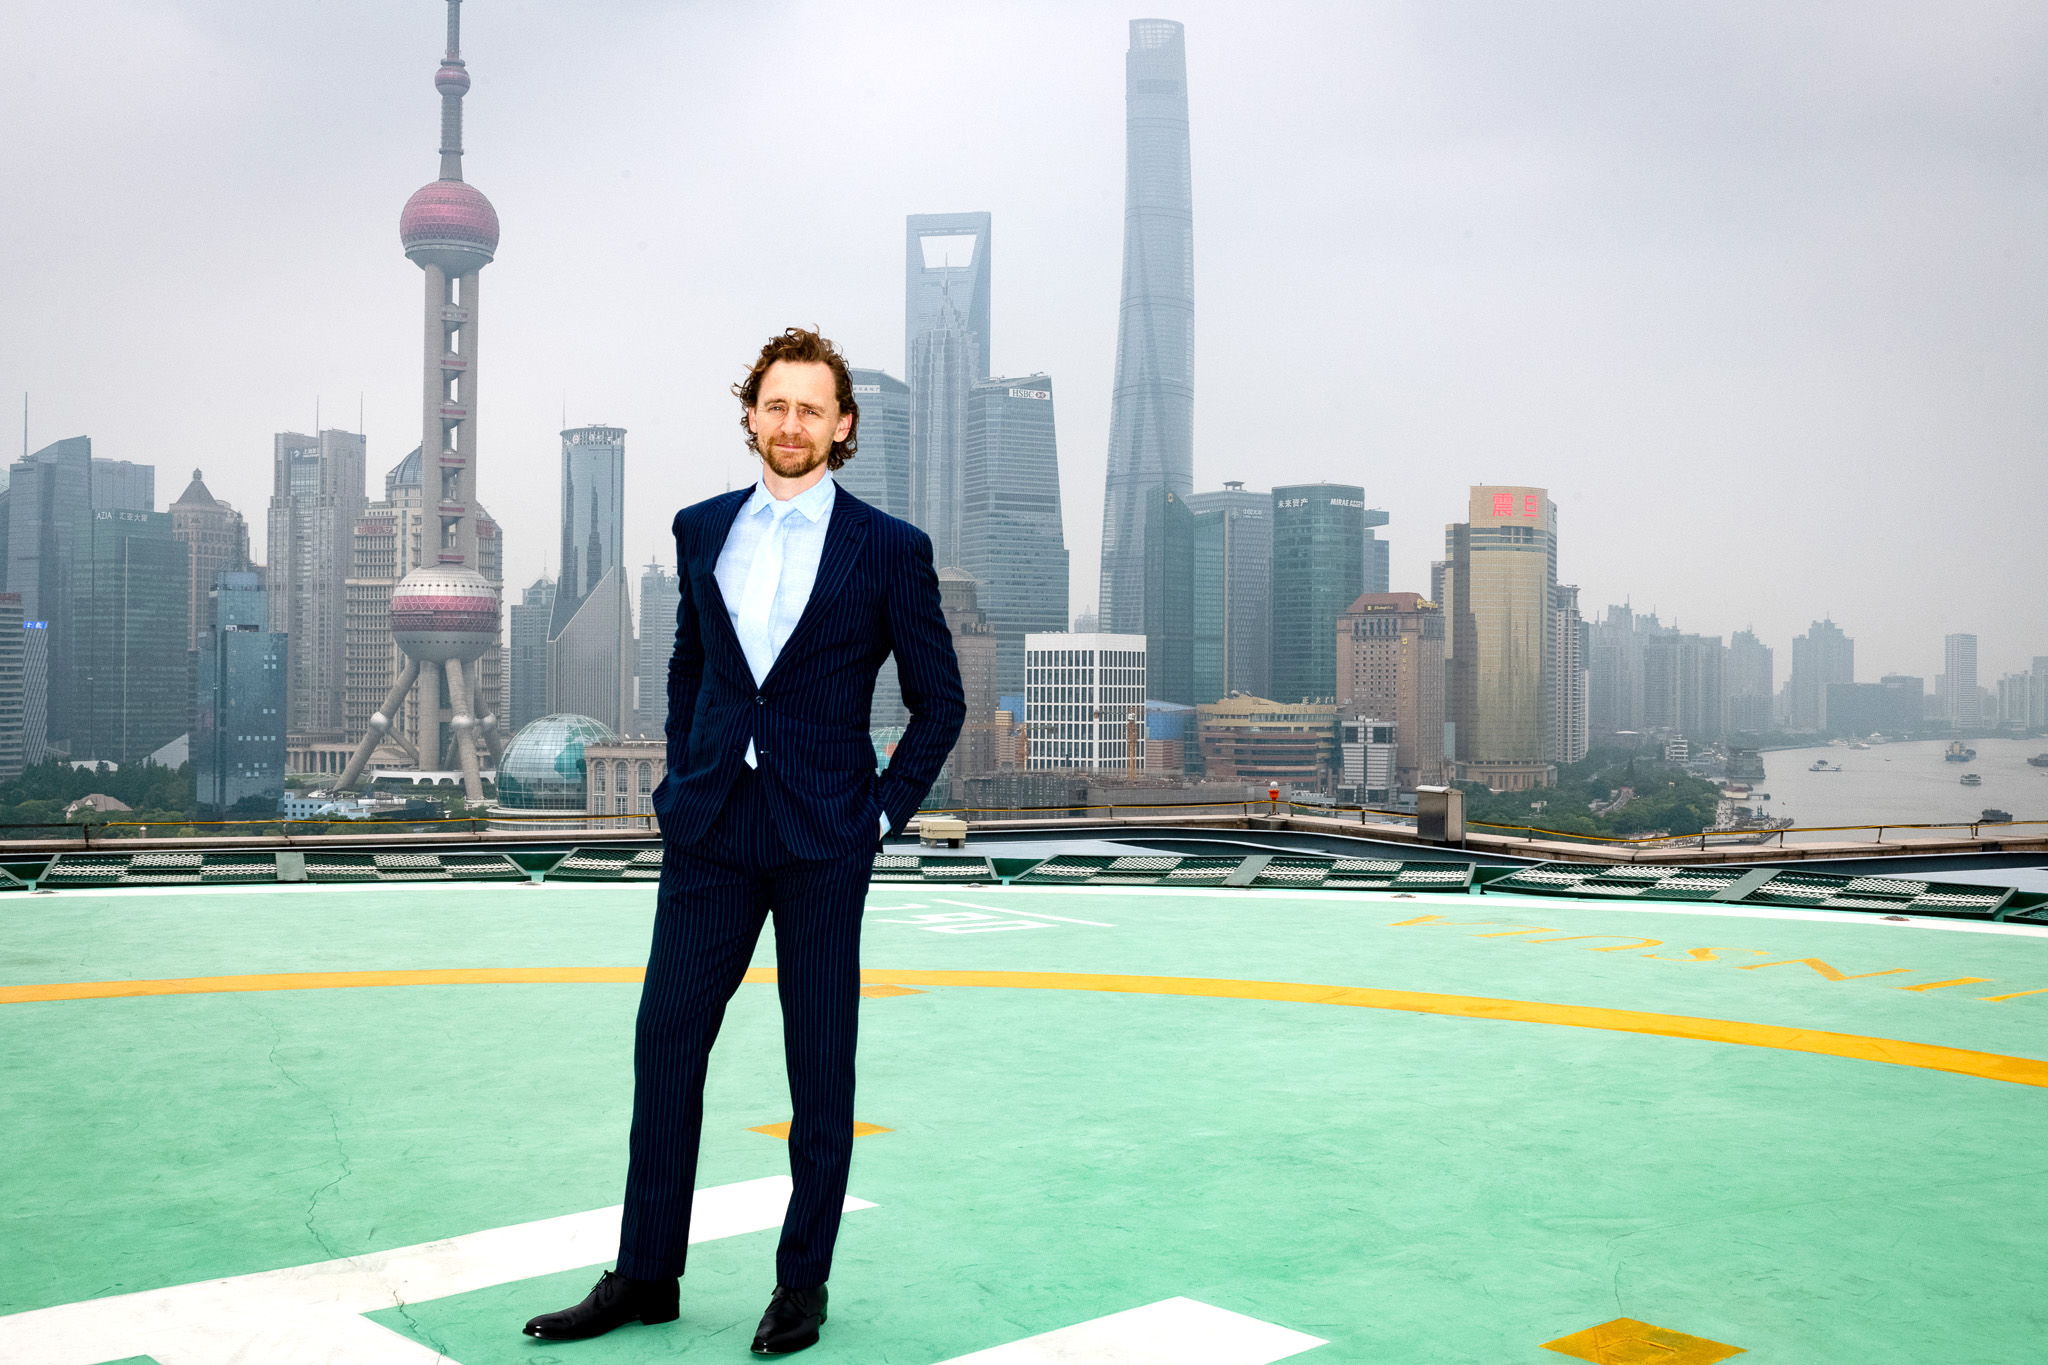 El actor Tom Hiddleston en el rooftop de The Peninsula Shanghai. Foto cortesía de BAFTA Grainne Quinlan